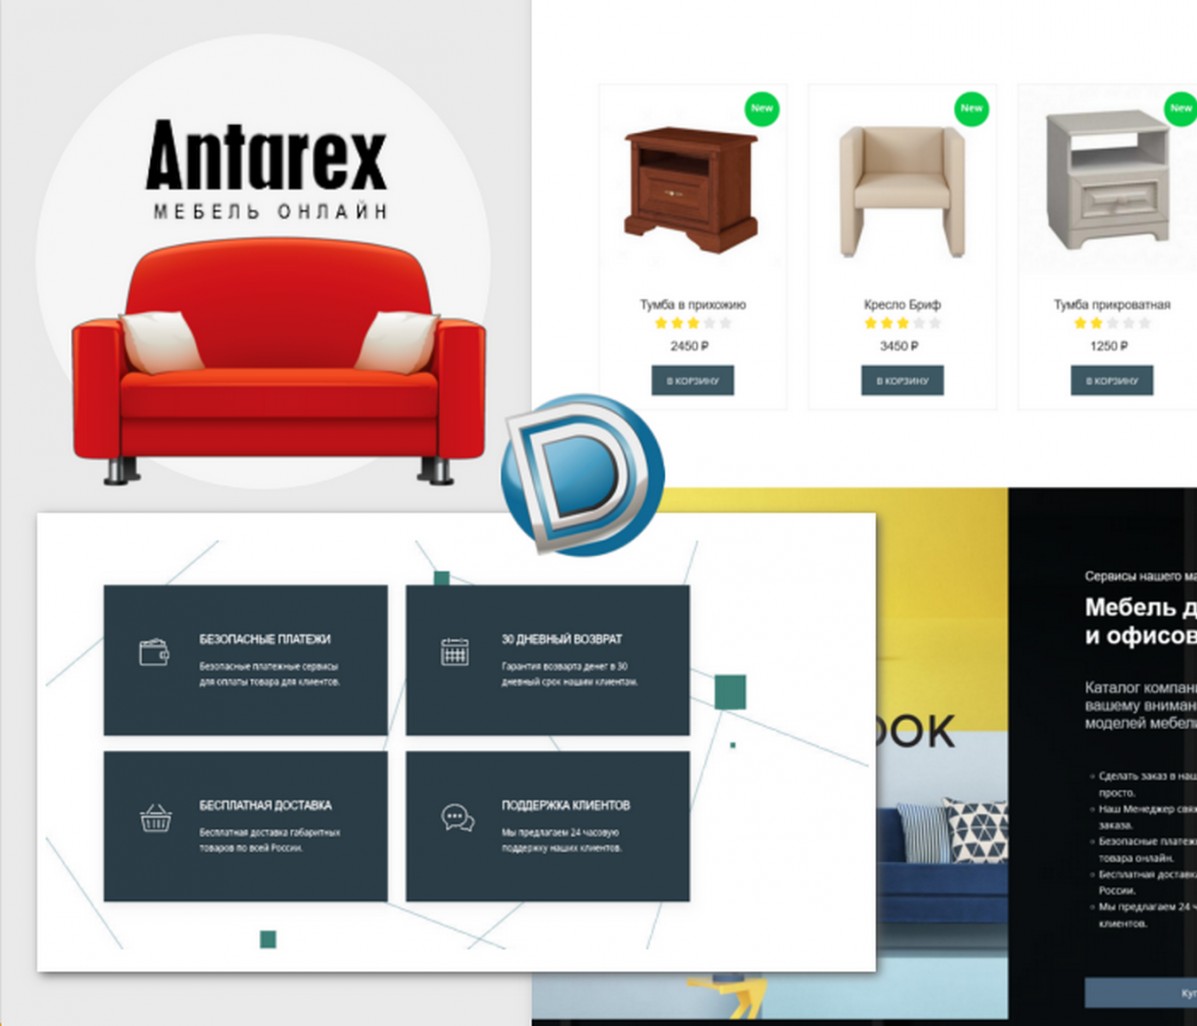 Antarex — готовый проект магазина мебели Dle 15.2